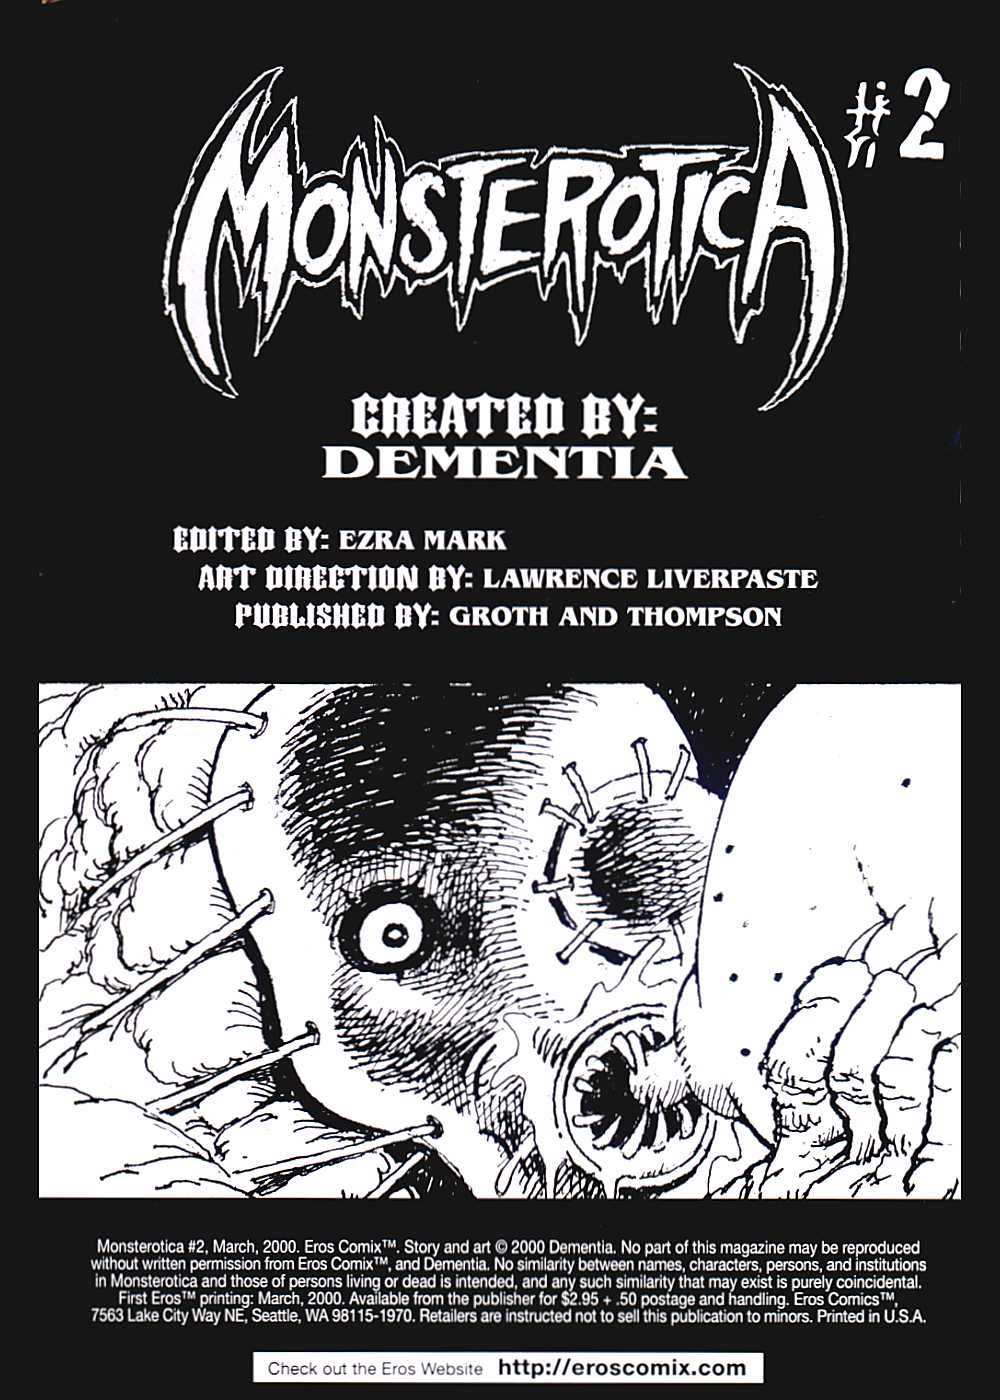 [Dementia] Monsterotica #2 